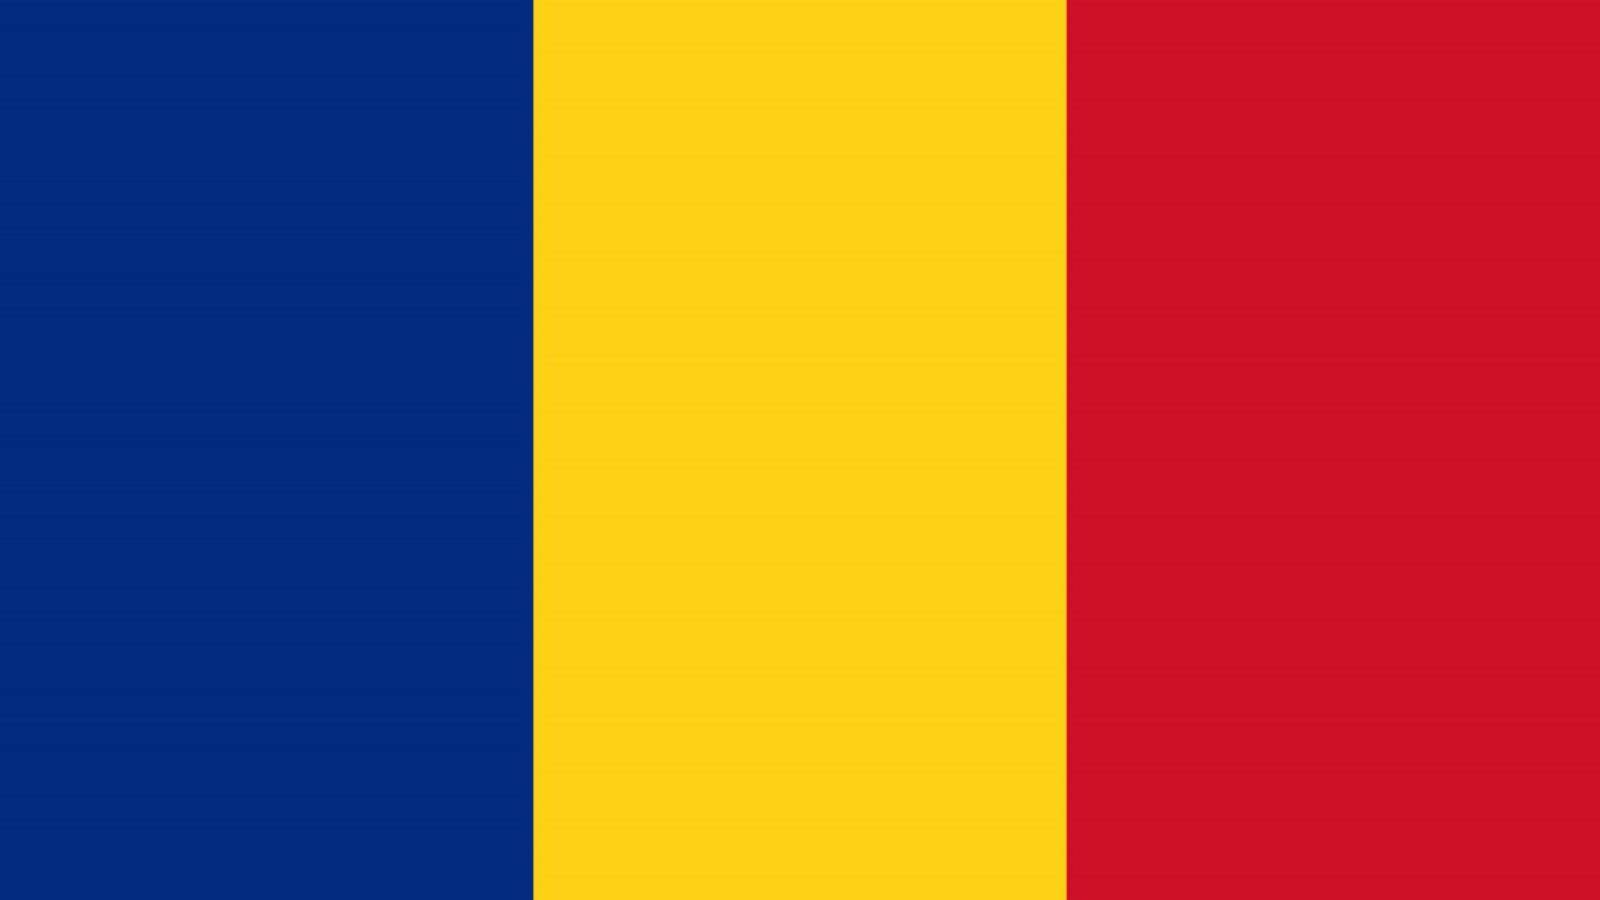 Chiarimento sulle attuali modifiche legislative dell'Esercito rumeno